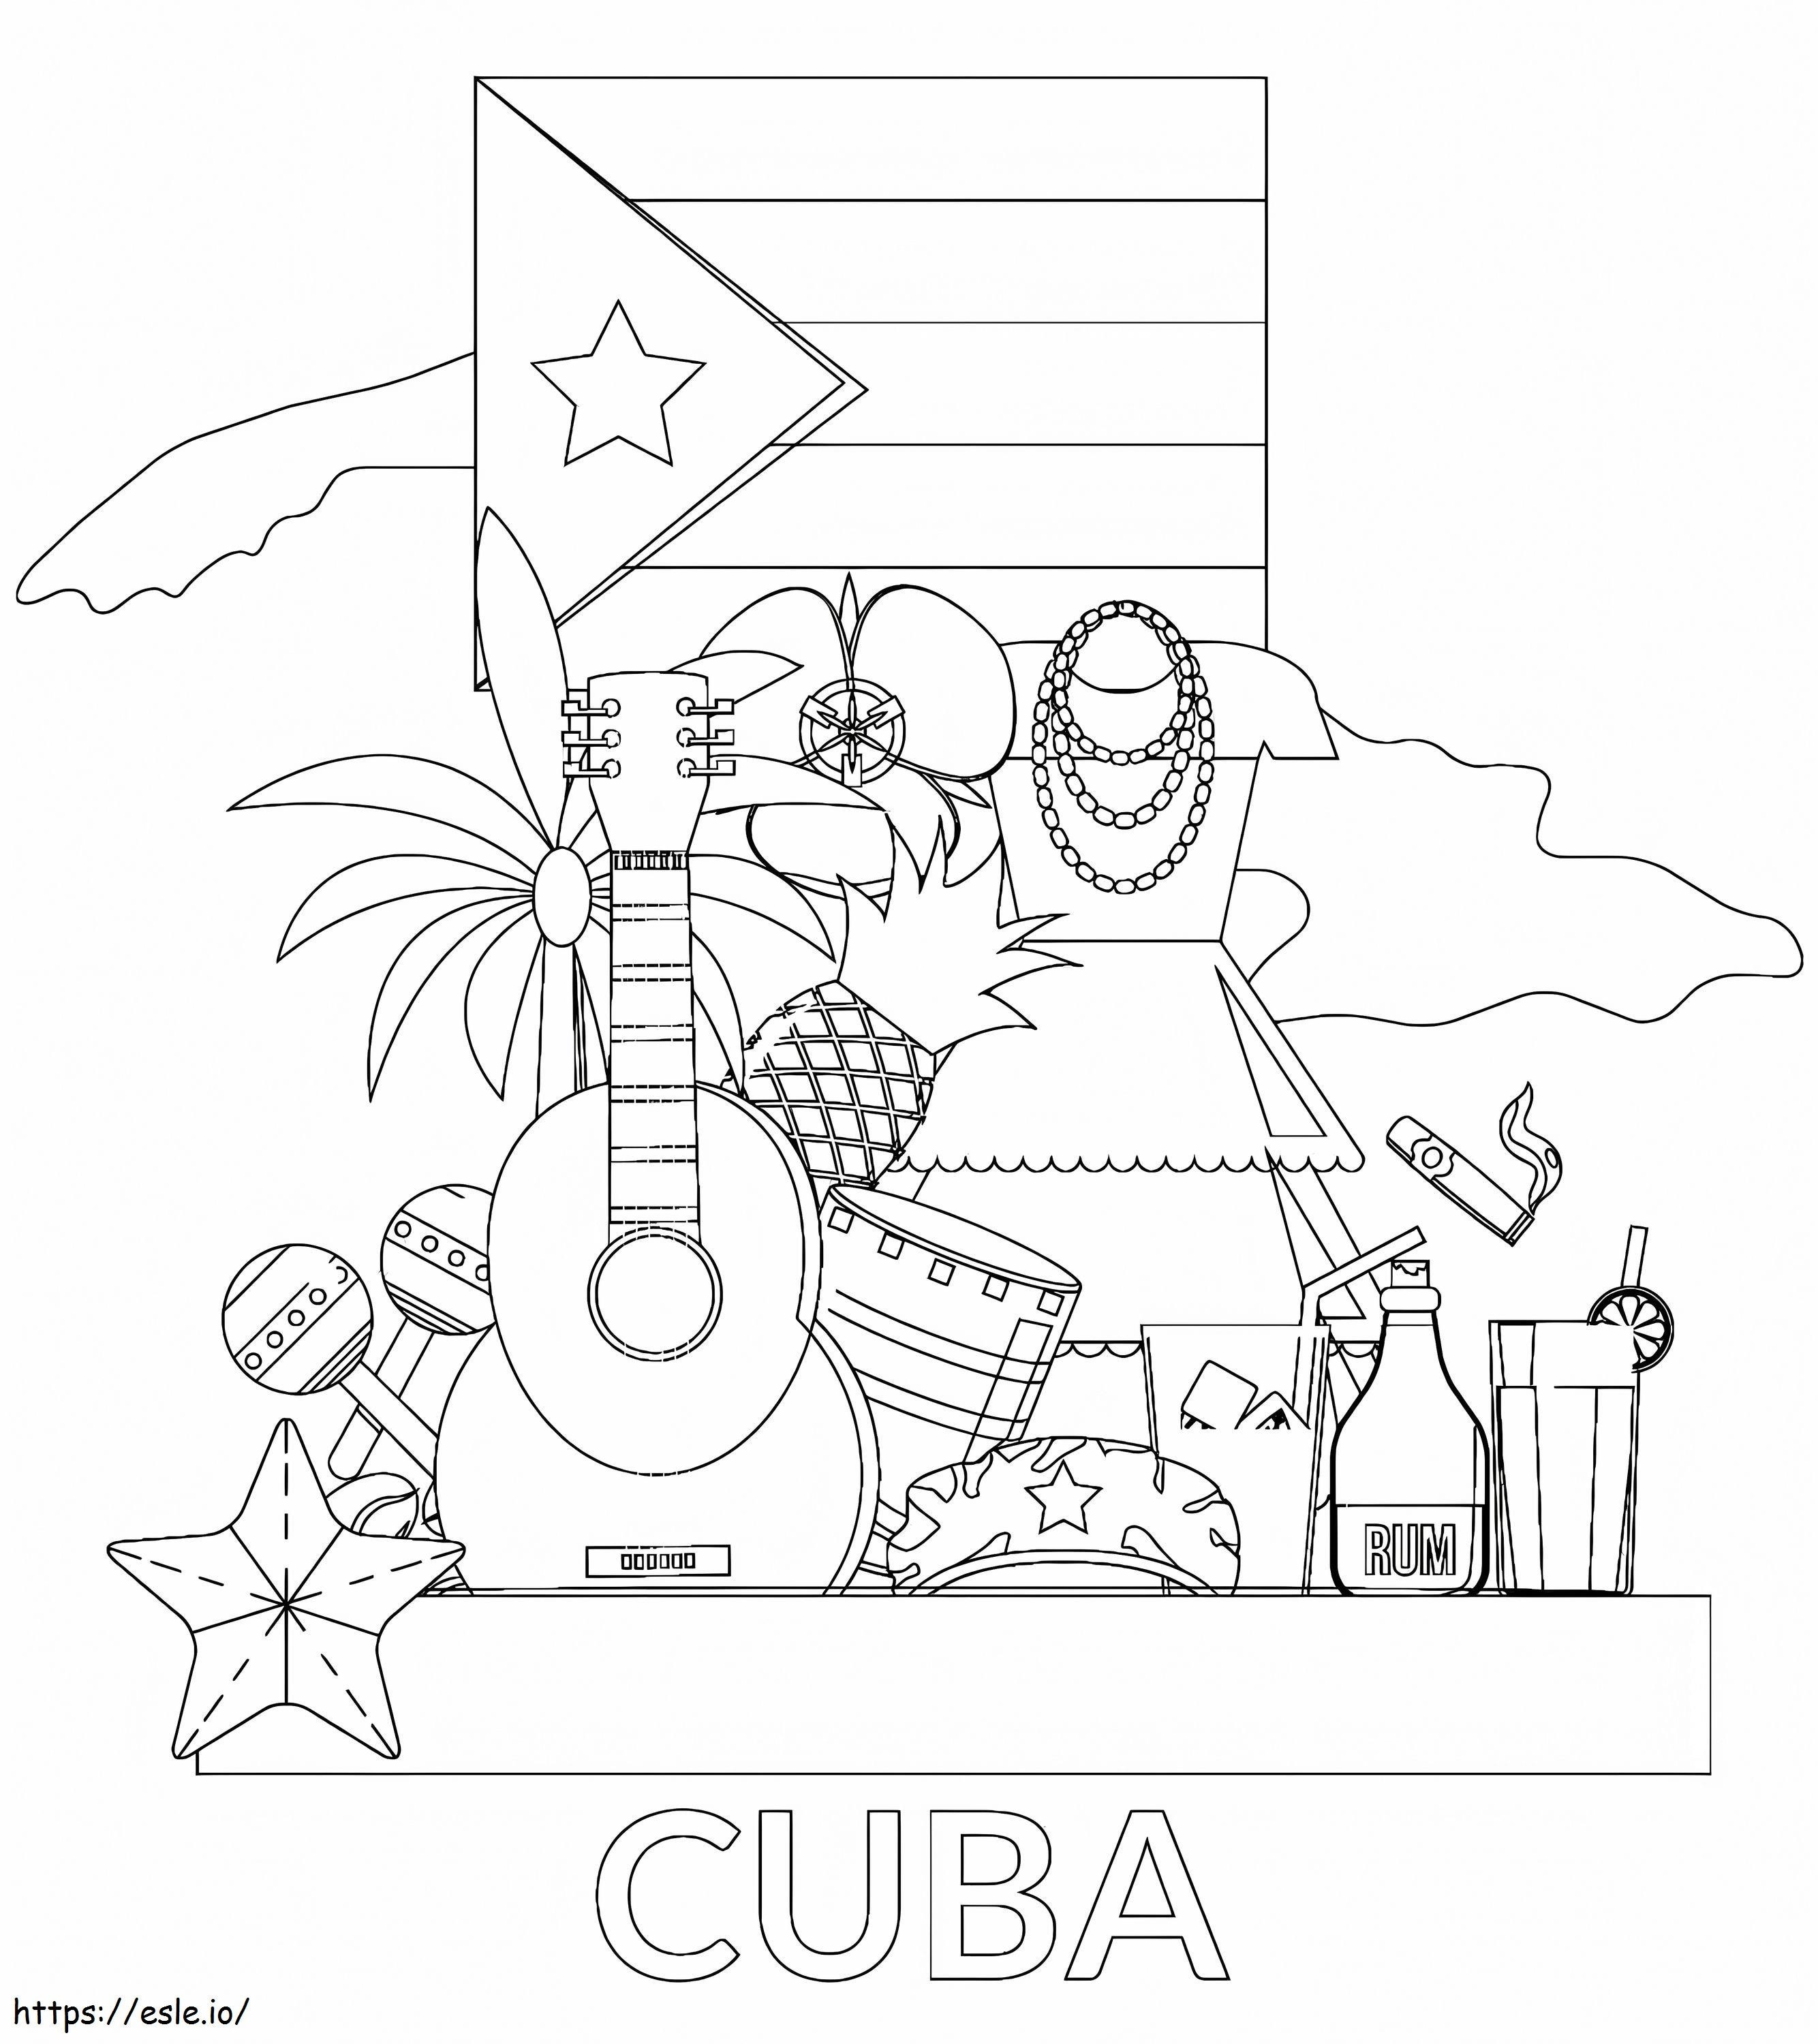 Coloriage Cuba imprimable gratuitement à imprimer dessin